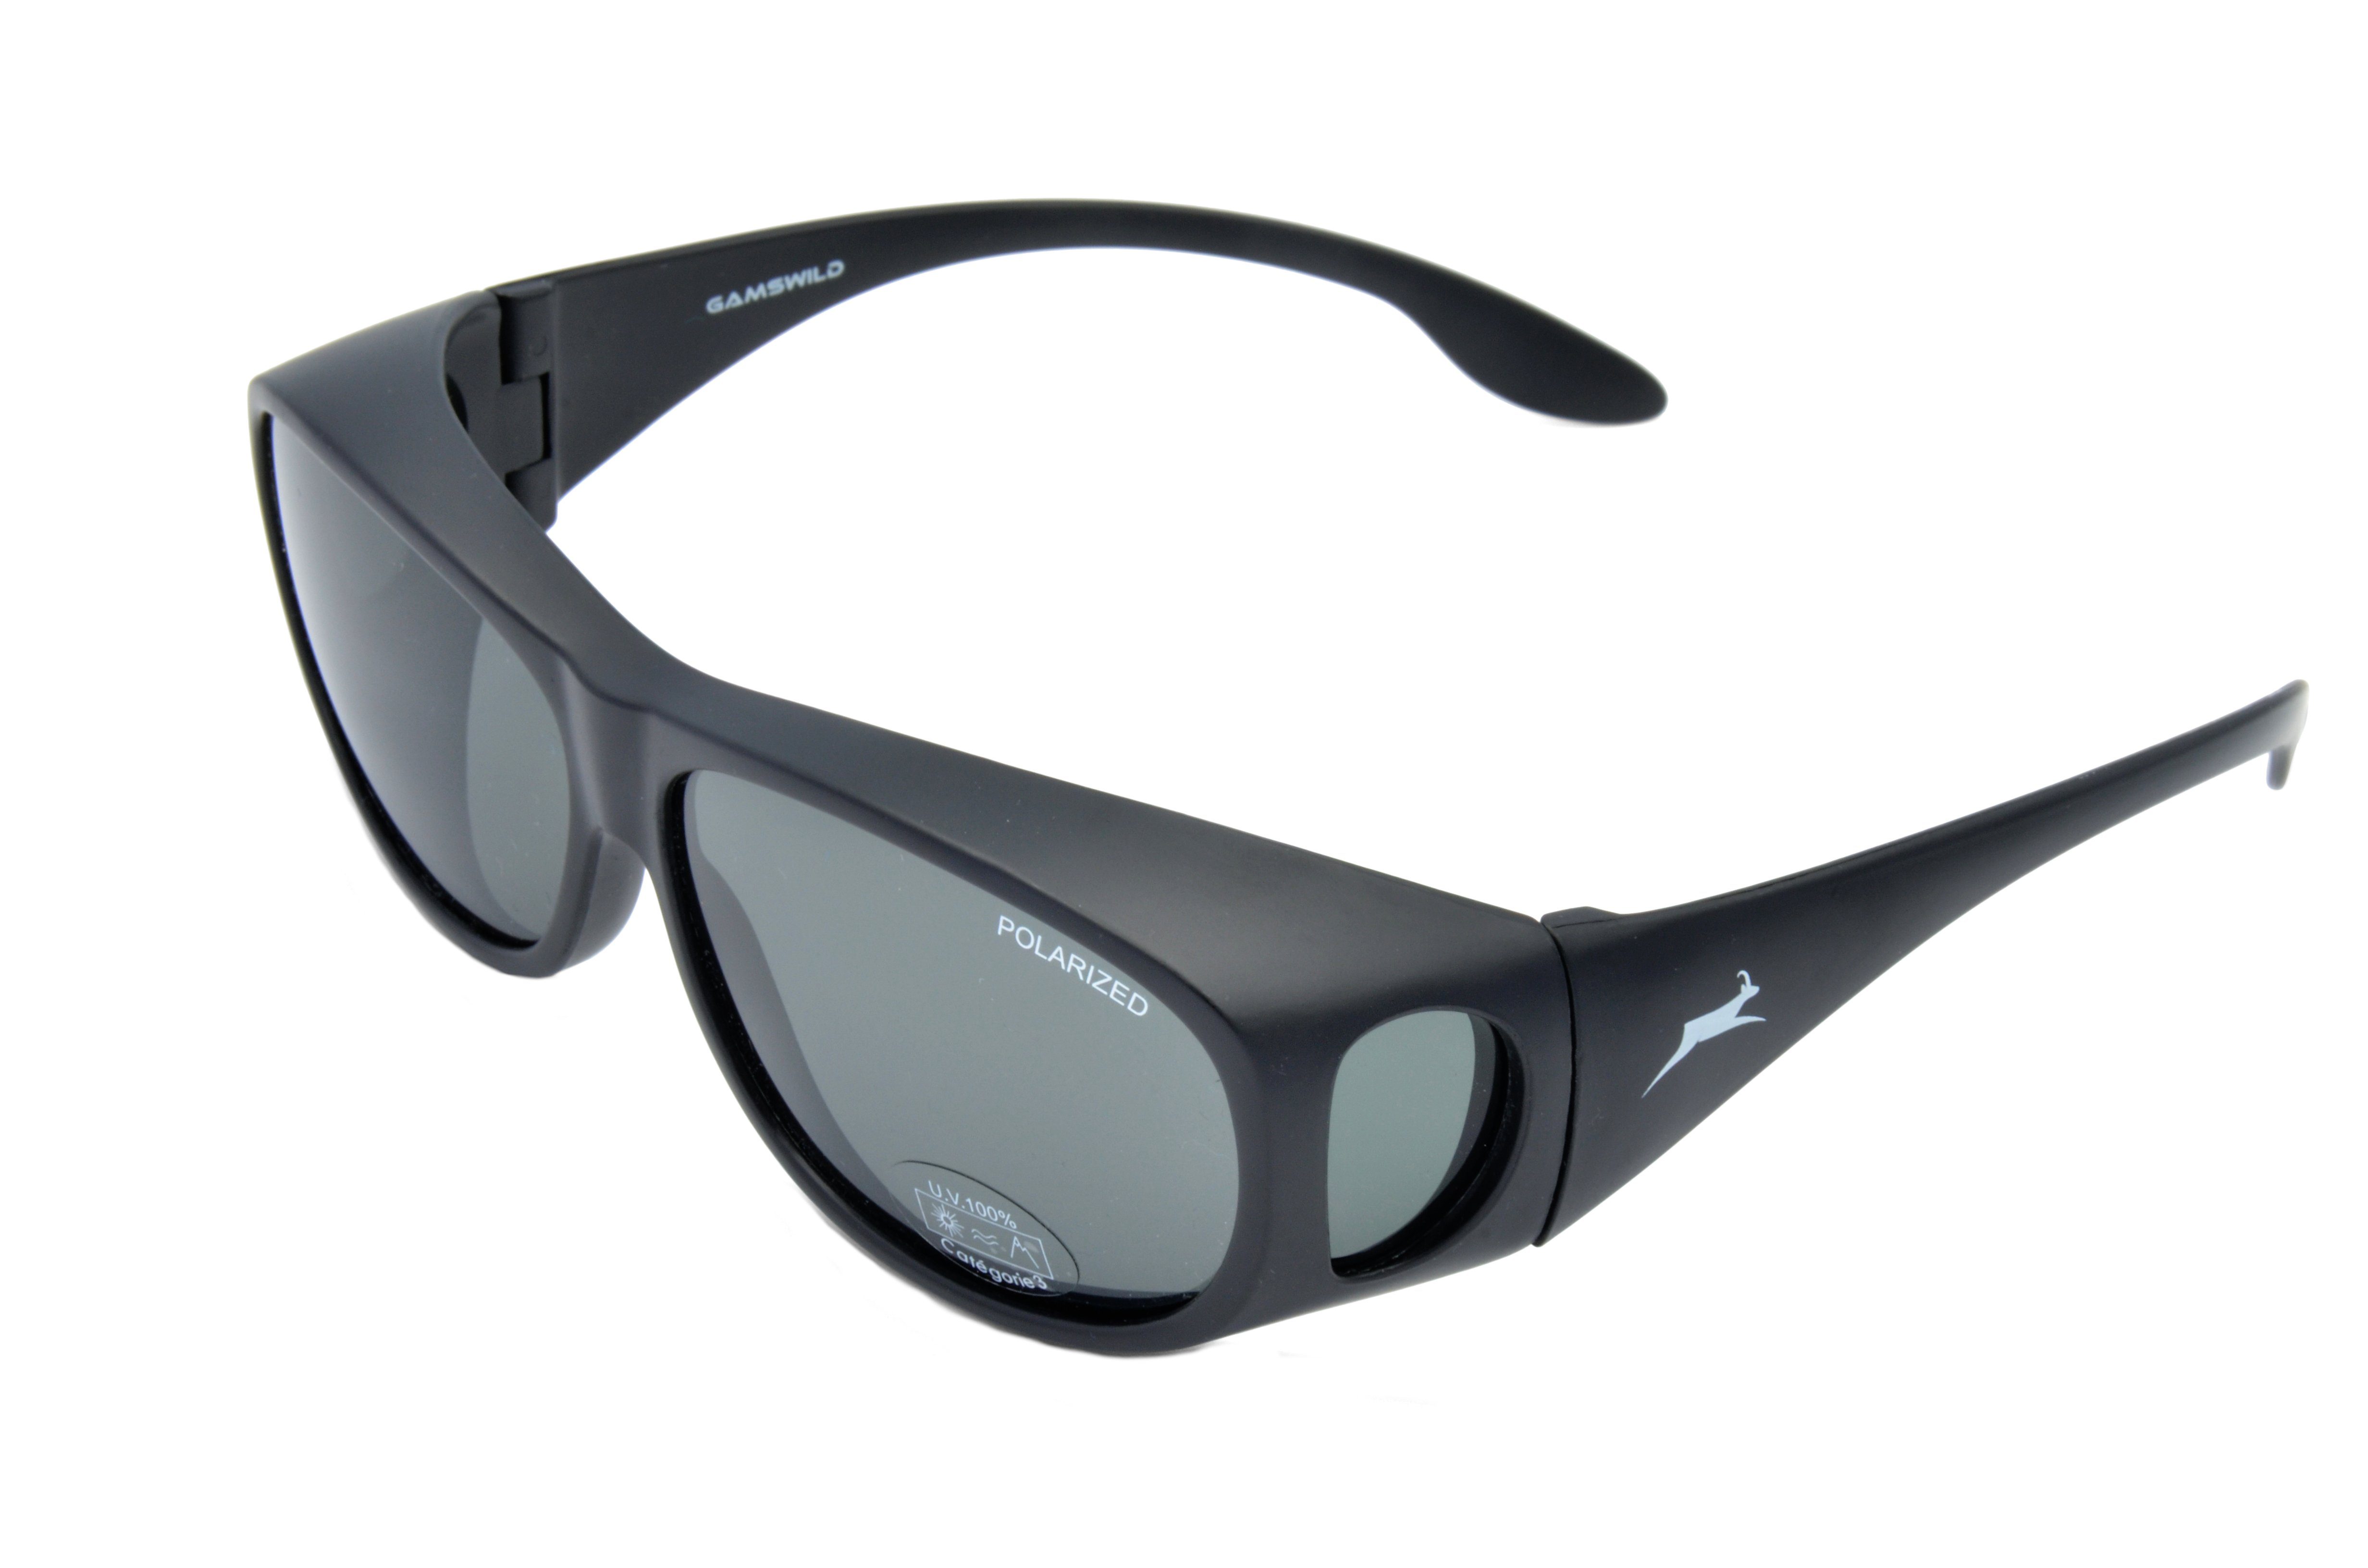 Gamswild Sonnenbrille WS4323 Überbrille Sportbrille Damen Herren, braun, gelb, blau, unisex, universelle Passform polarisiert grau